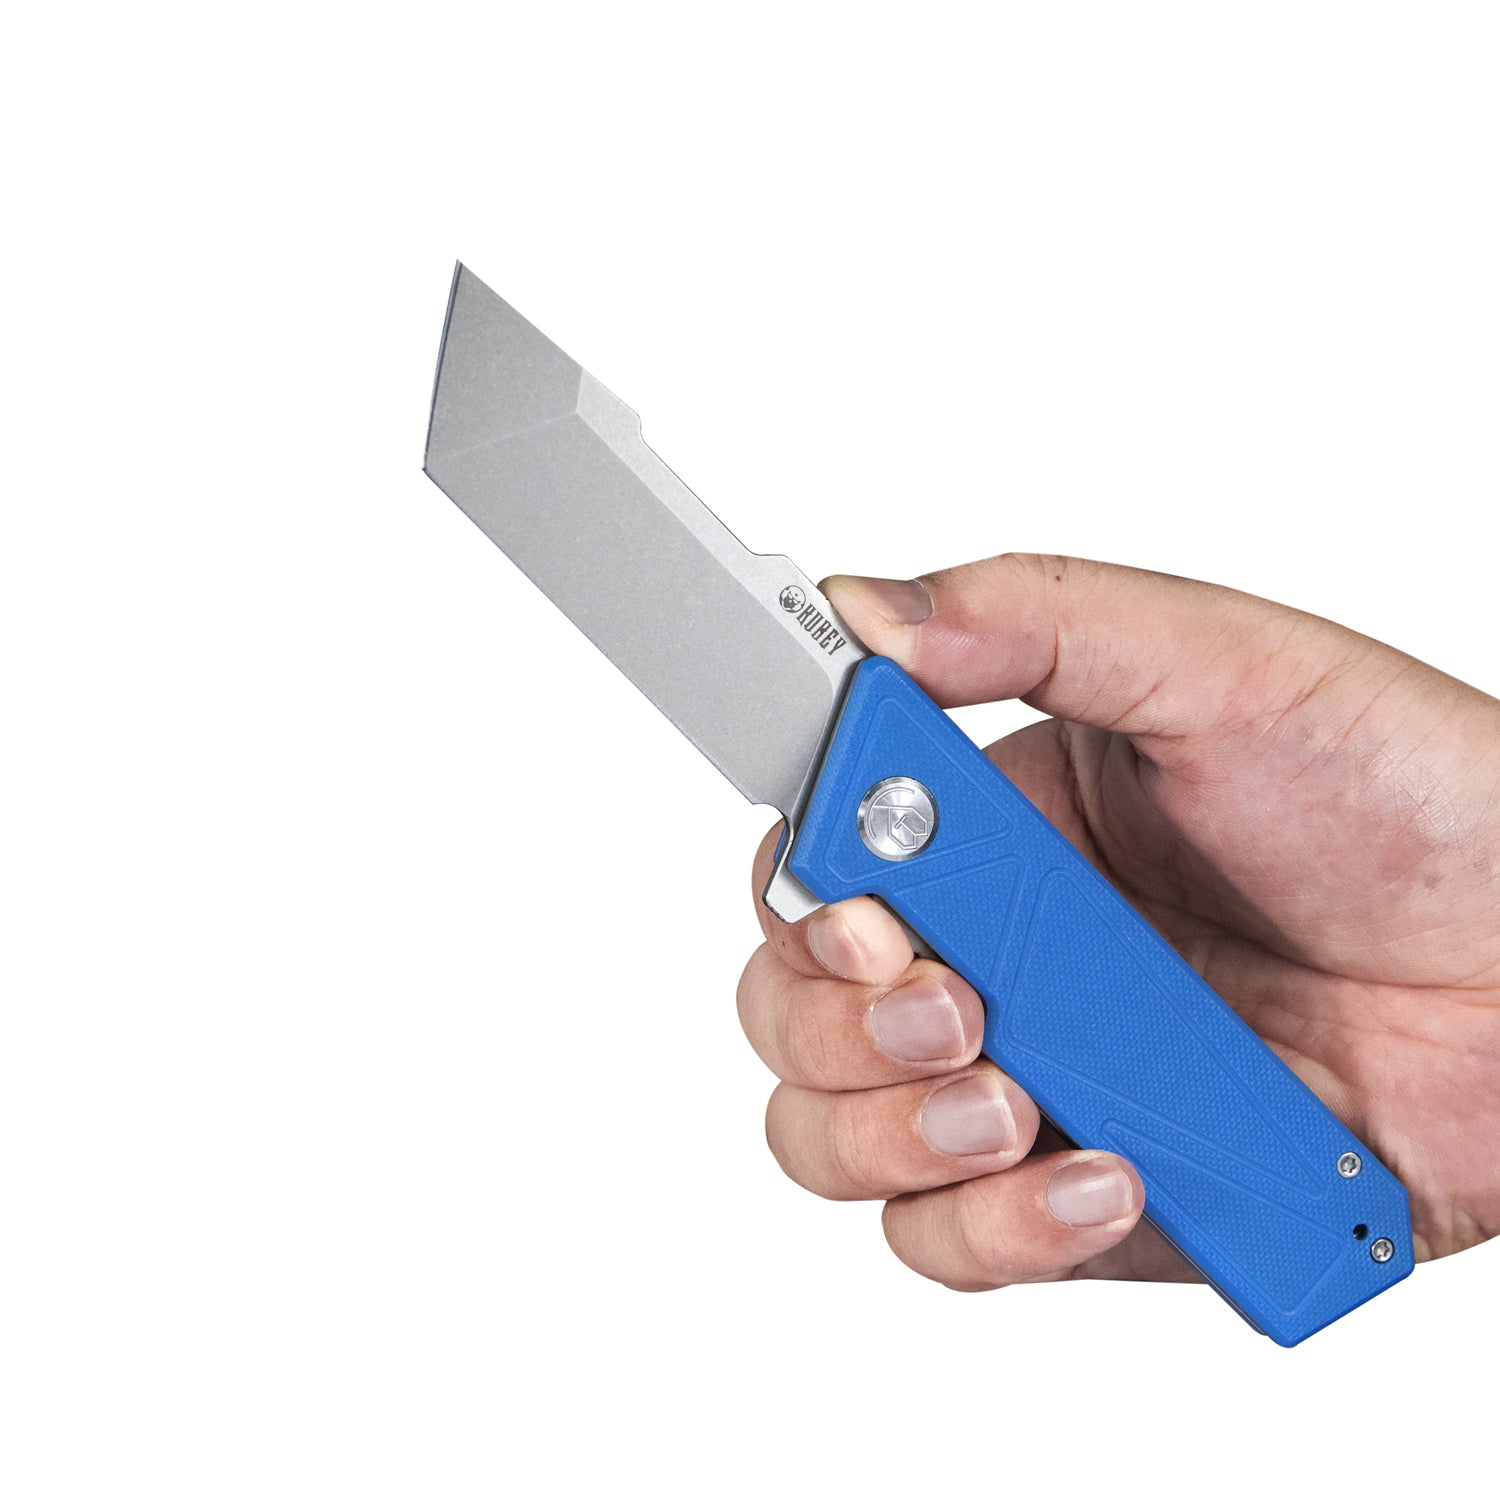 Kubey Avenger Outdoor Edc Folding Pocket Knife Blue G10 Handle 3.07" Bead Blasted D2 KU104C